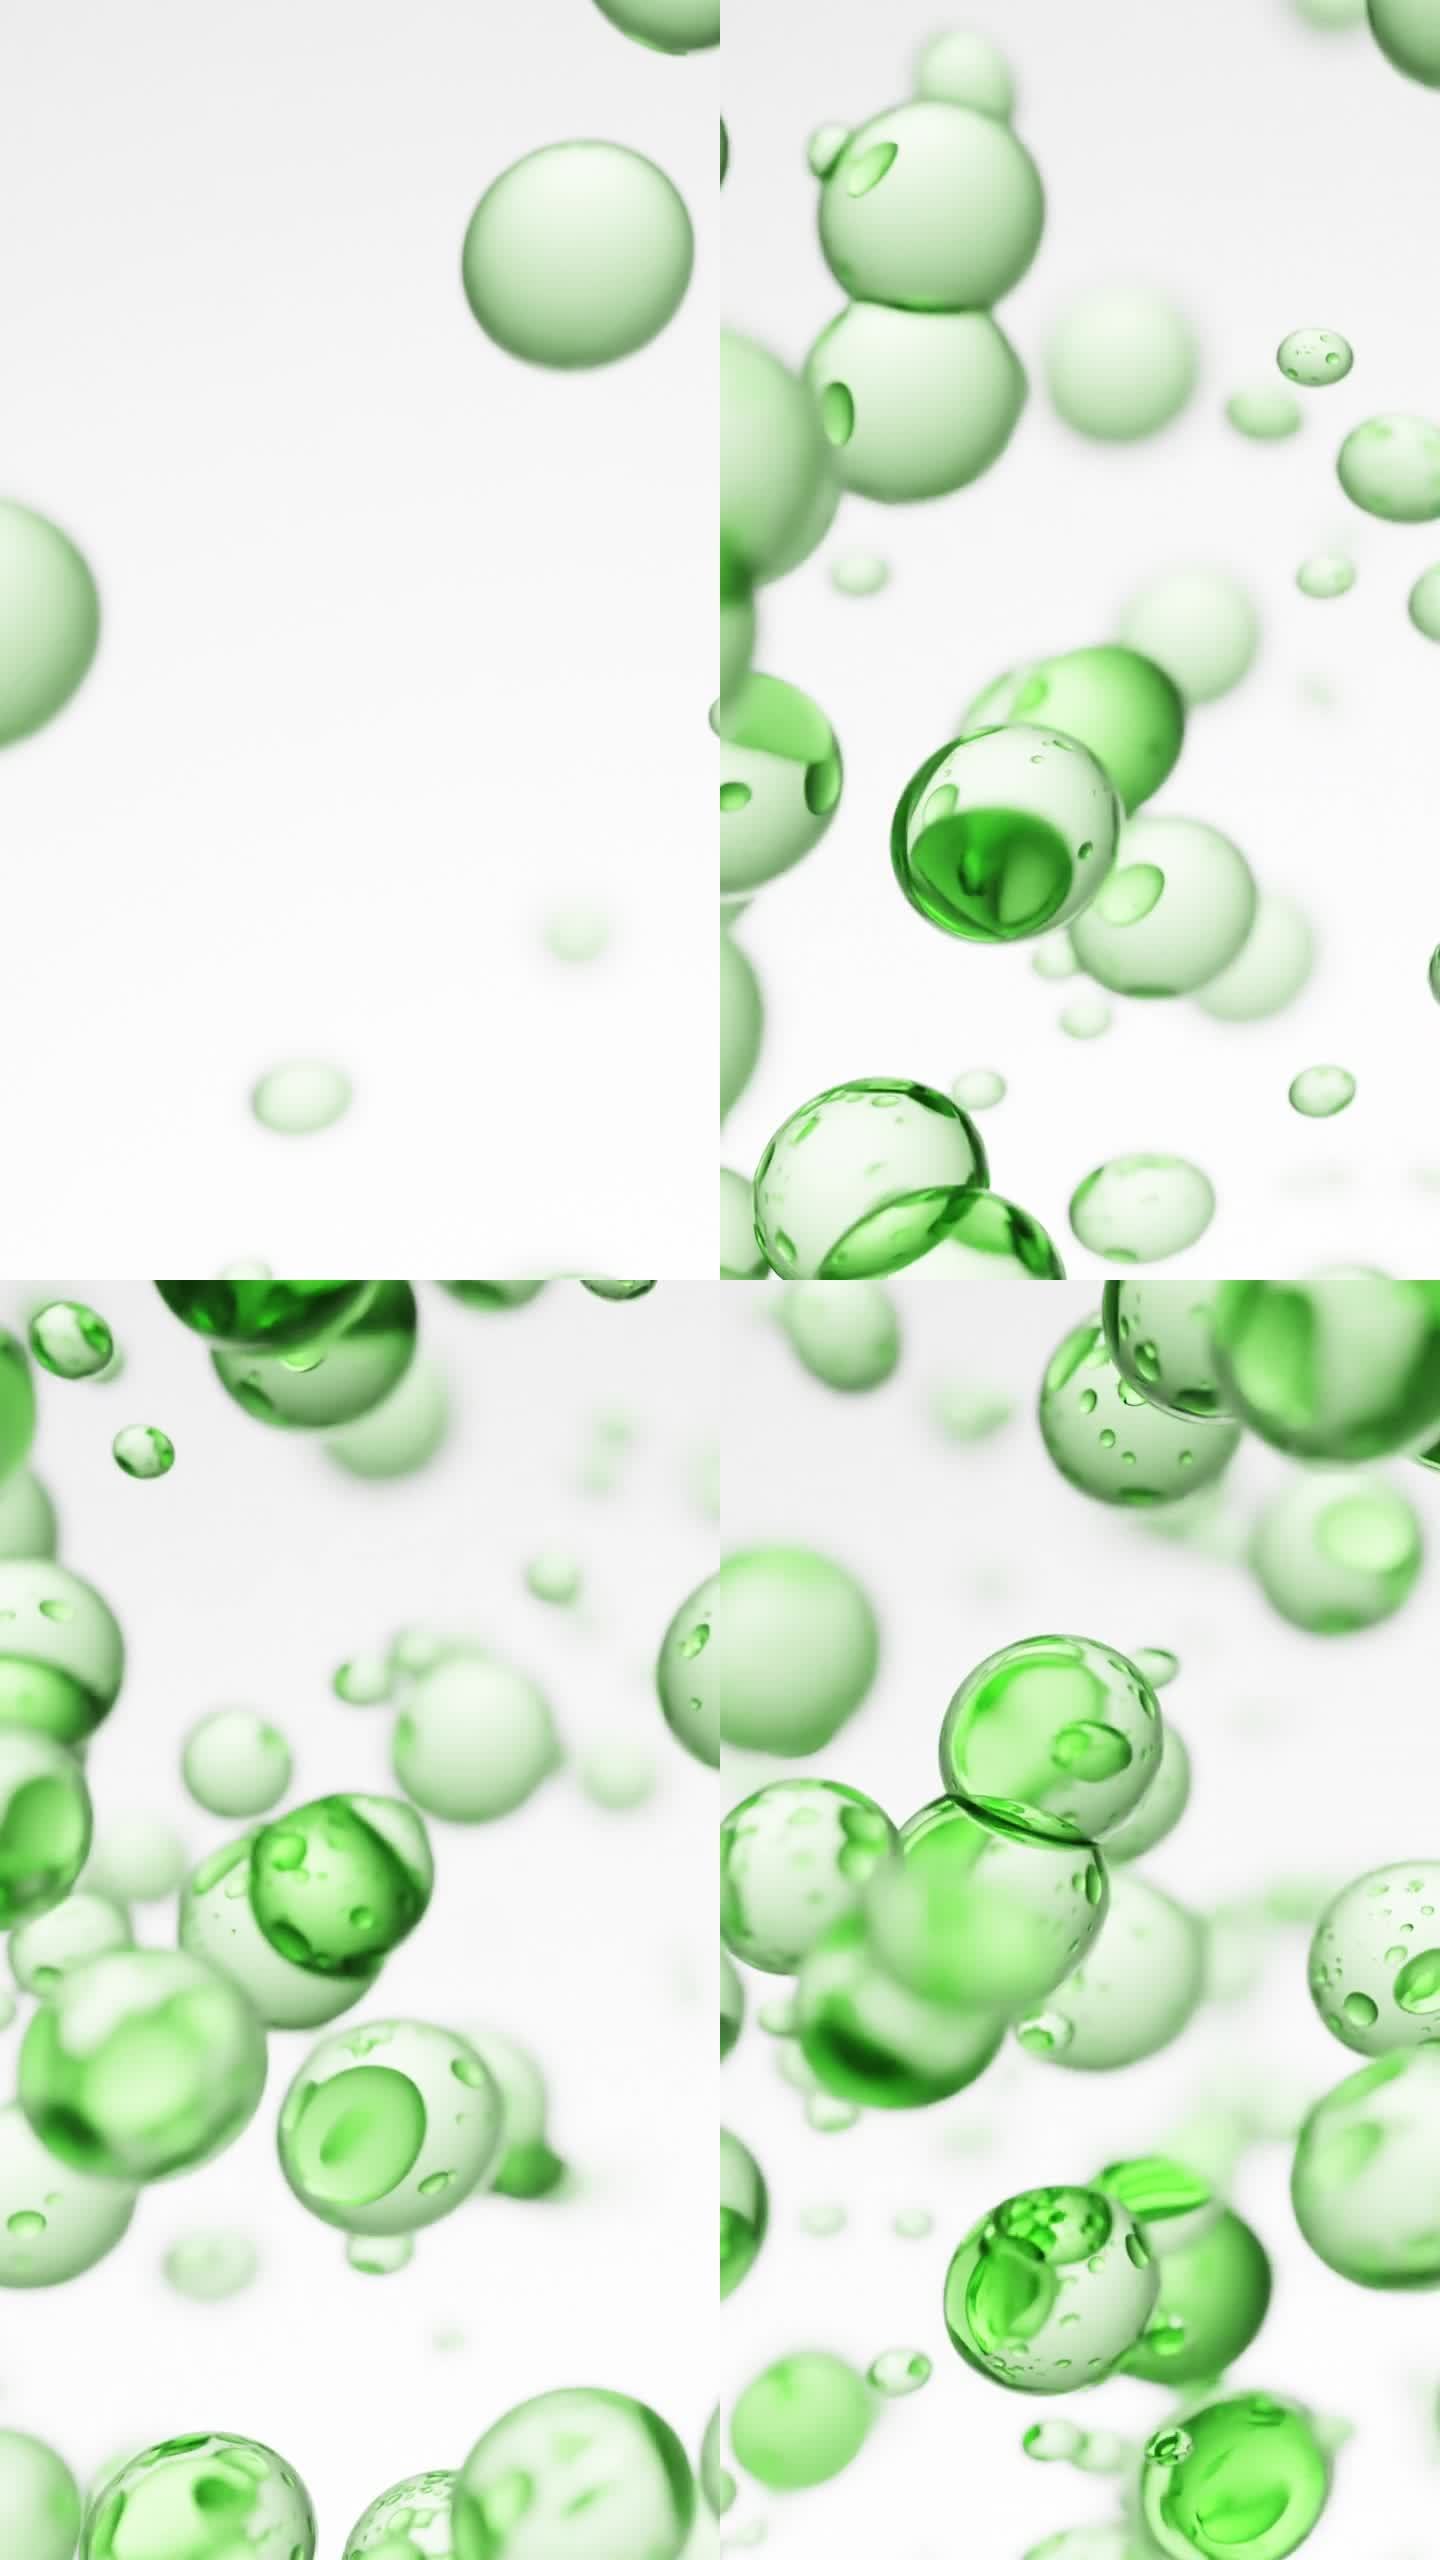 上升的液体气泡呈绿色